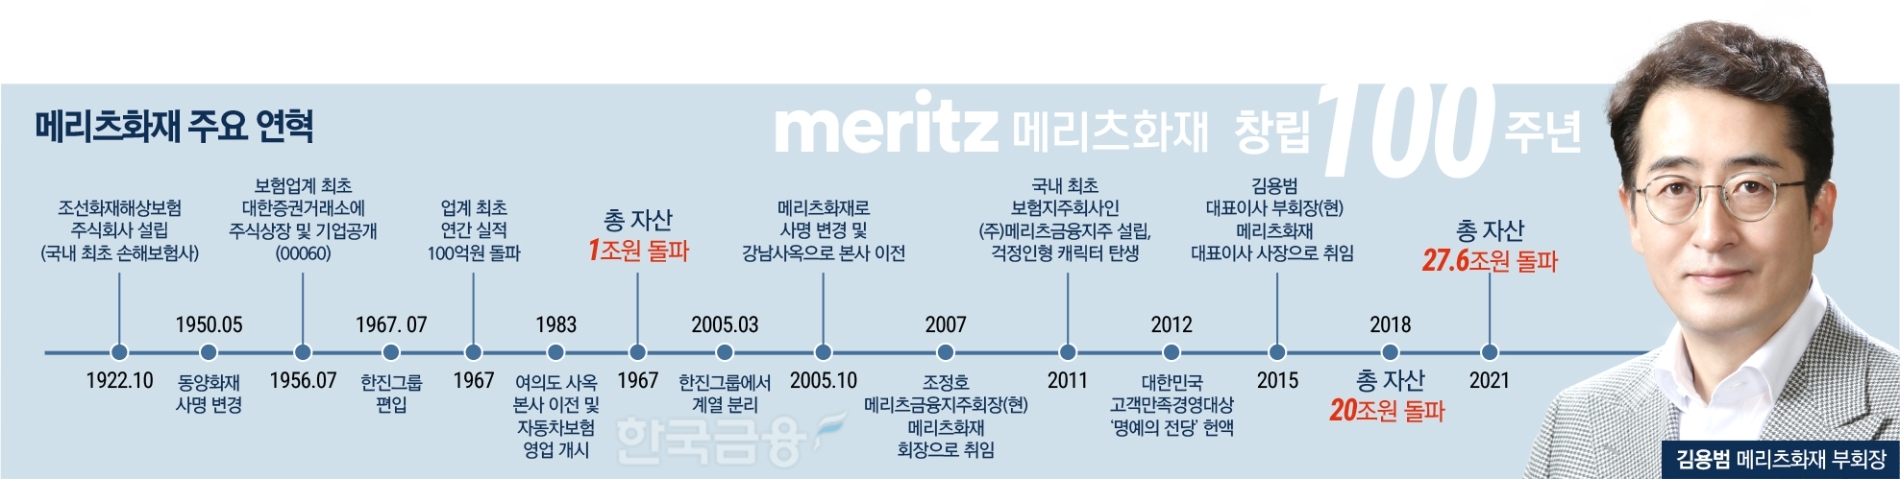 [창립 100주년 메리츠화재] 김용범 부회장 ‘혁신 DNA’ 성장 가속도